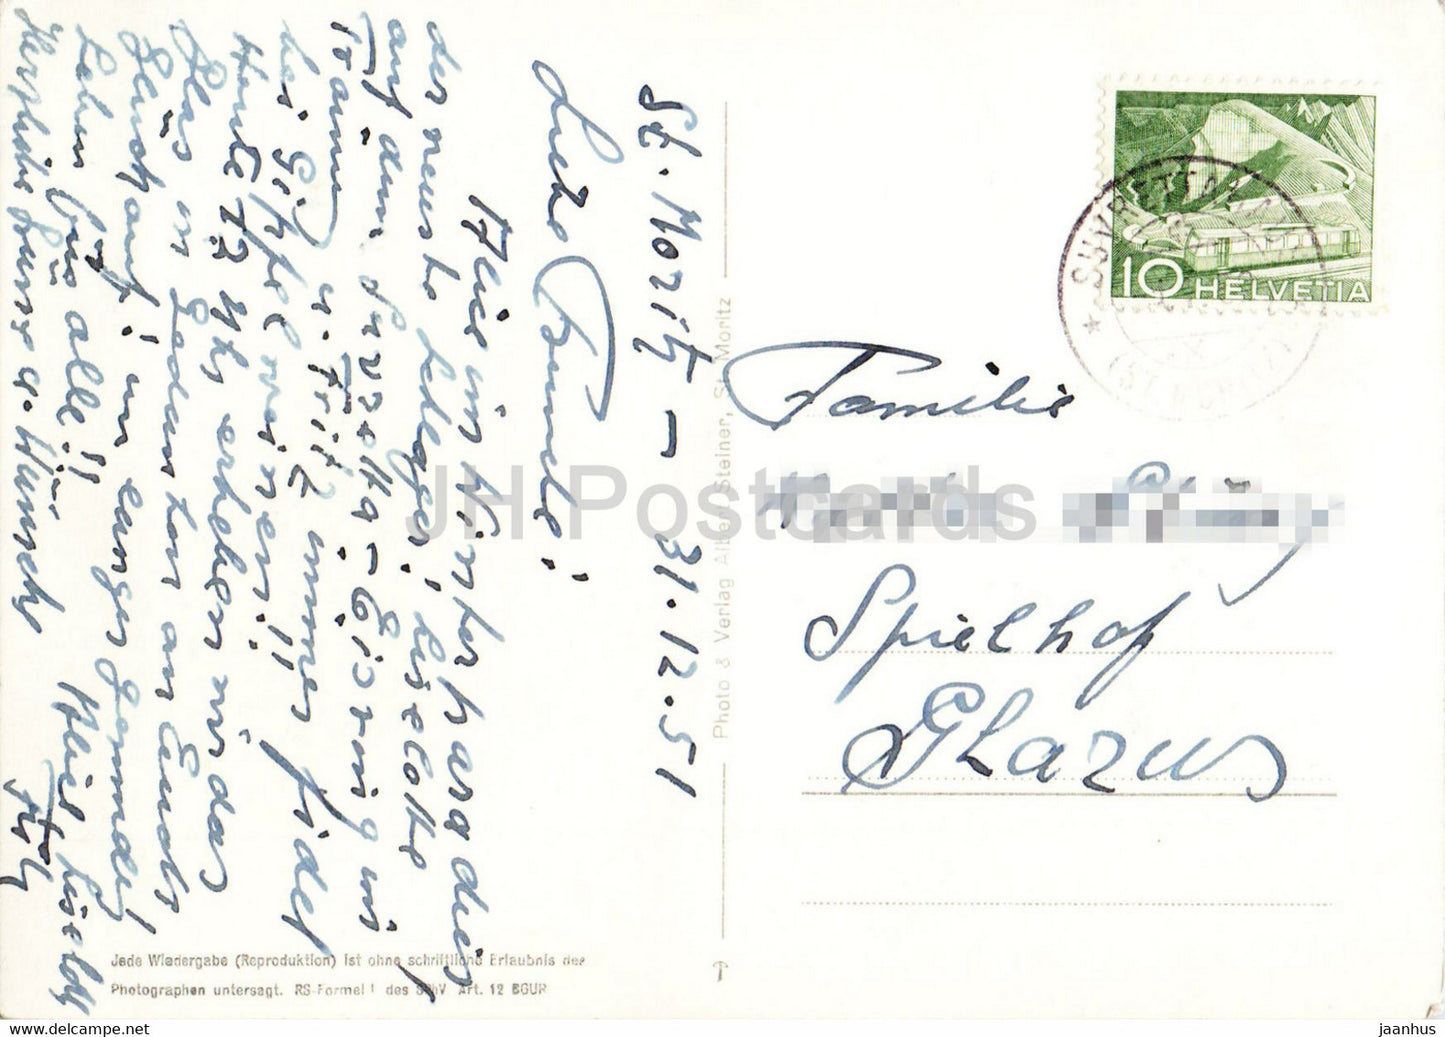 St. Moritz - Oberalpina - 5835 - 1951 - alte Postkarte - Schweiz - gebraucht